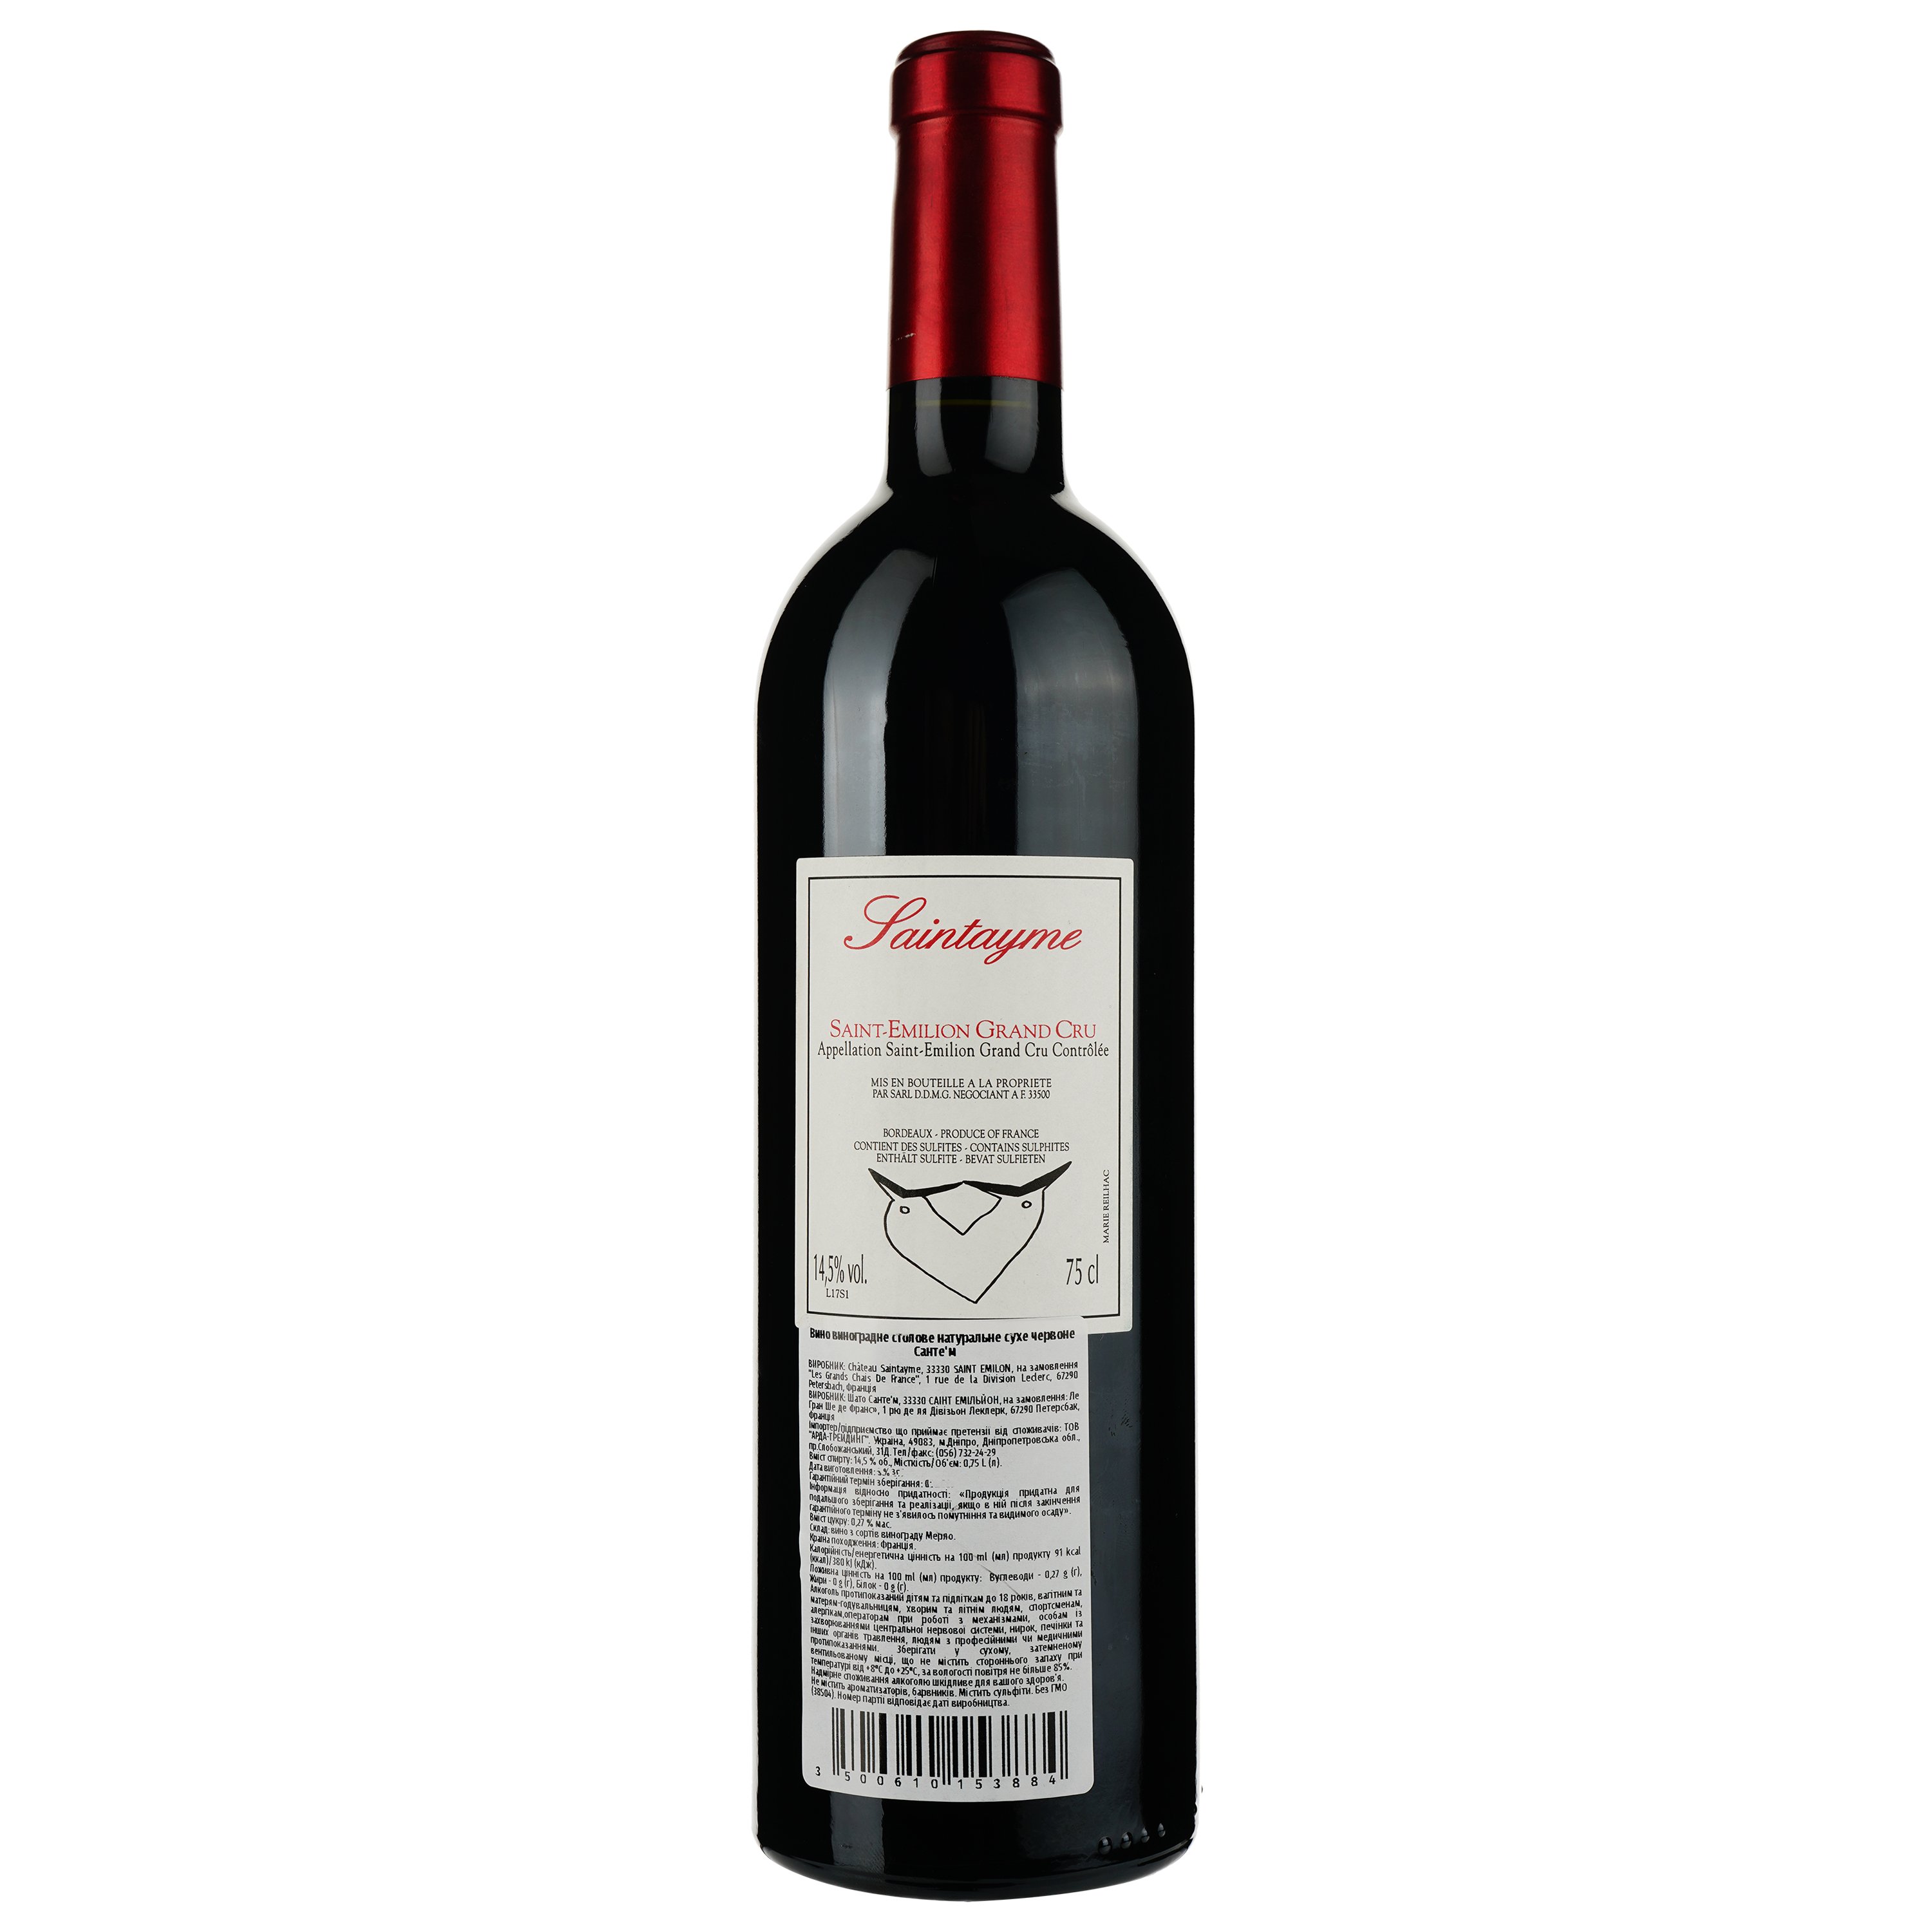 Вино Saintayme Saint-Emilion Grand Cru 2017, червоне, сухе, 0.75 л - фото 2